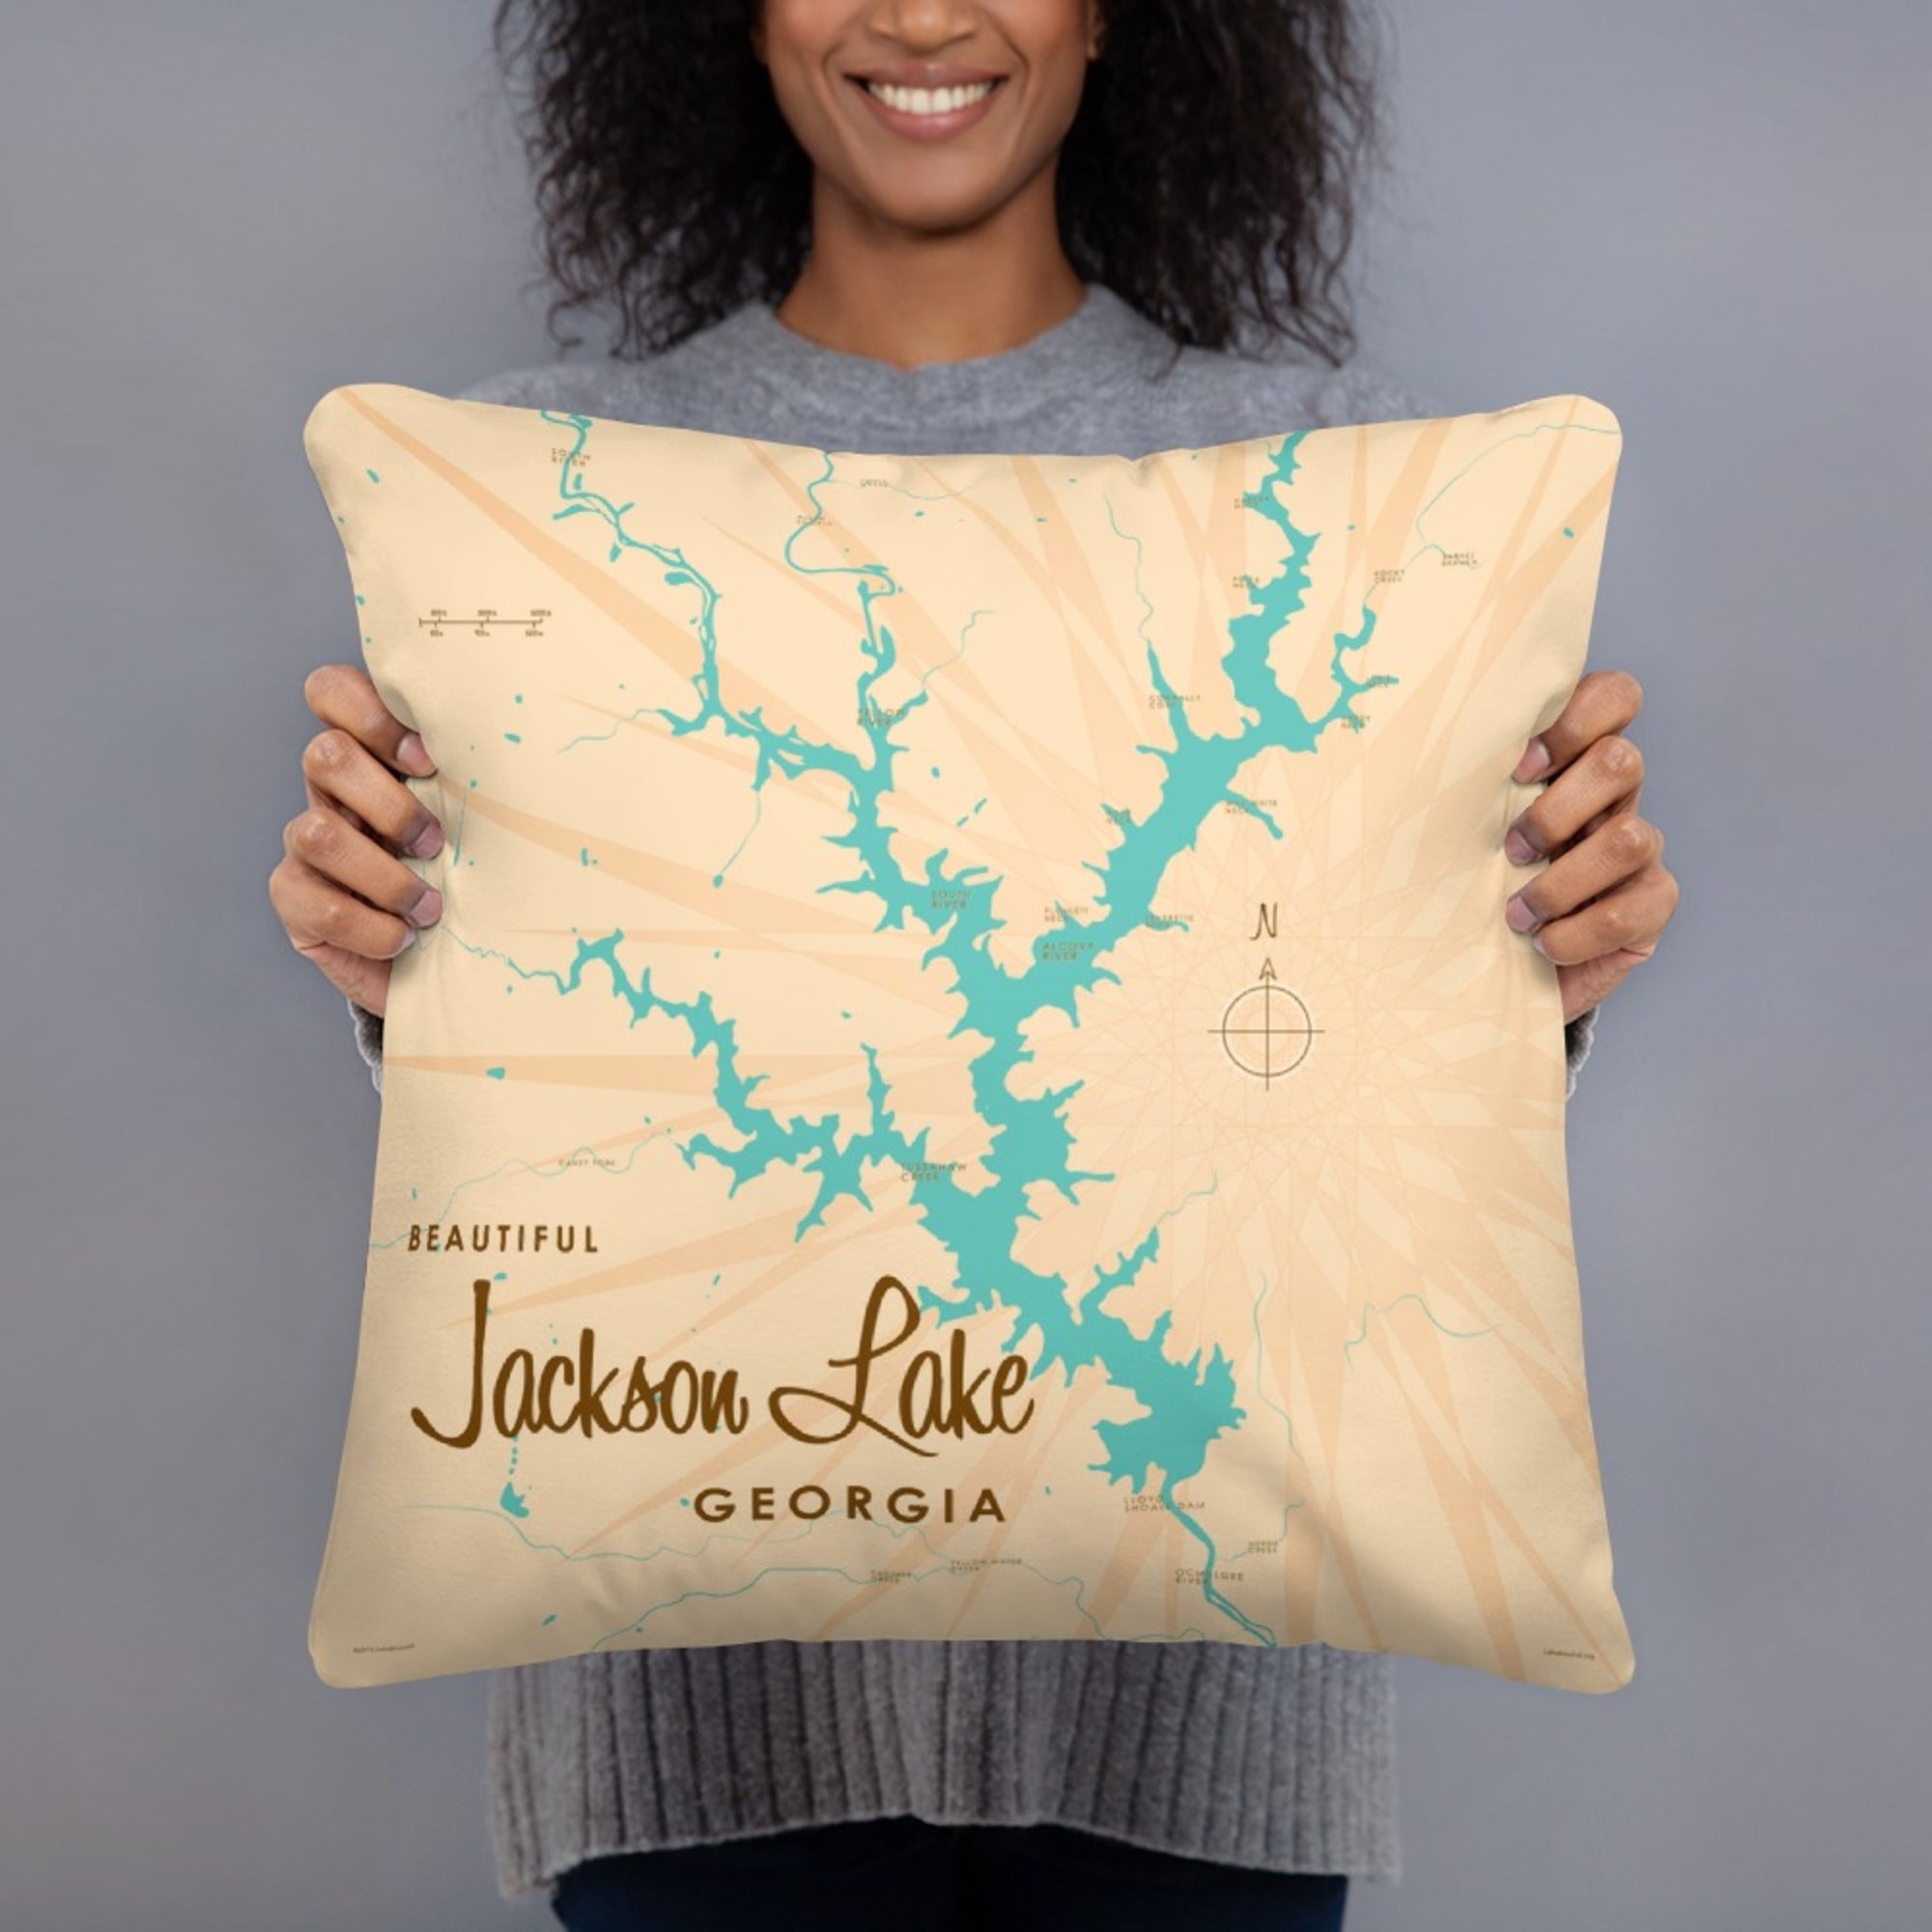 Jackson Lake Georgia Pillow